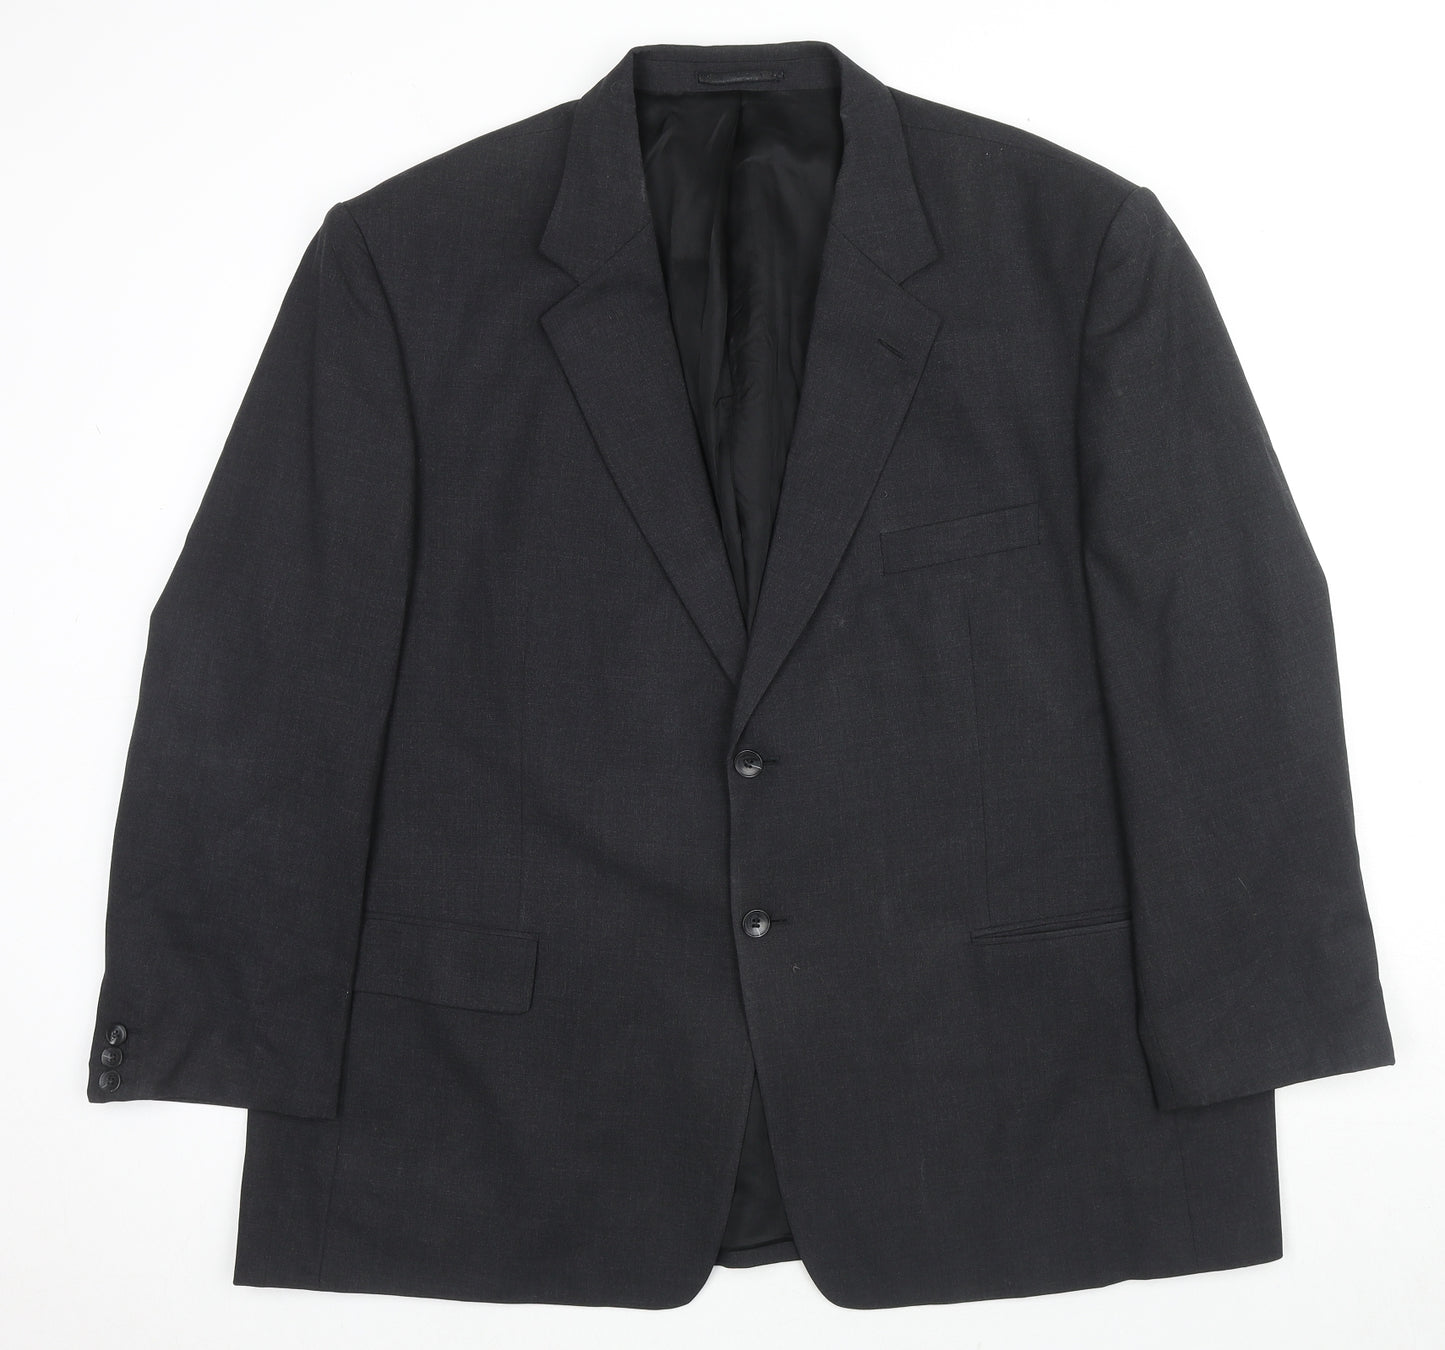 James Barry Mens Black Polyester Jacket Suit Jacket Size 48 Regular